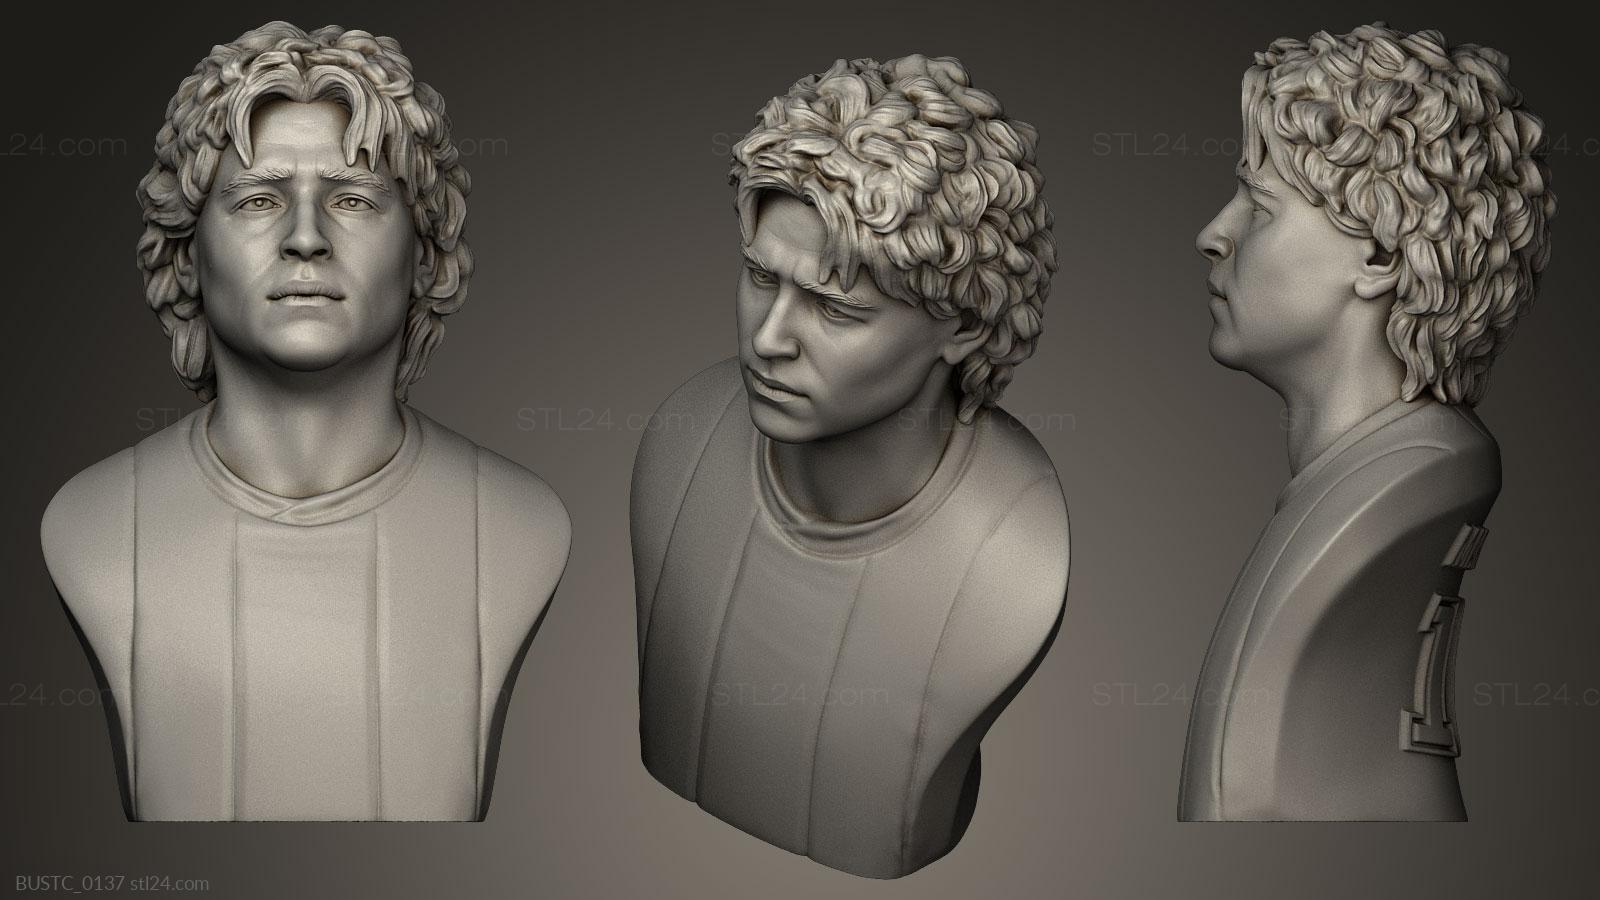 Бюсты и барельефы известных личностей (Диего Армандо Марадона, BUSTC_0137) 3D модель для ЧПУ станка